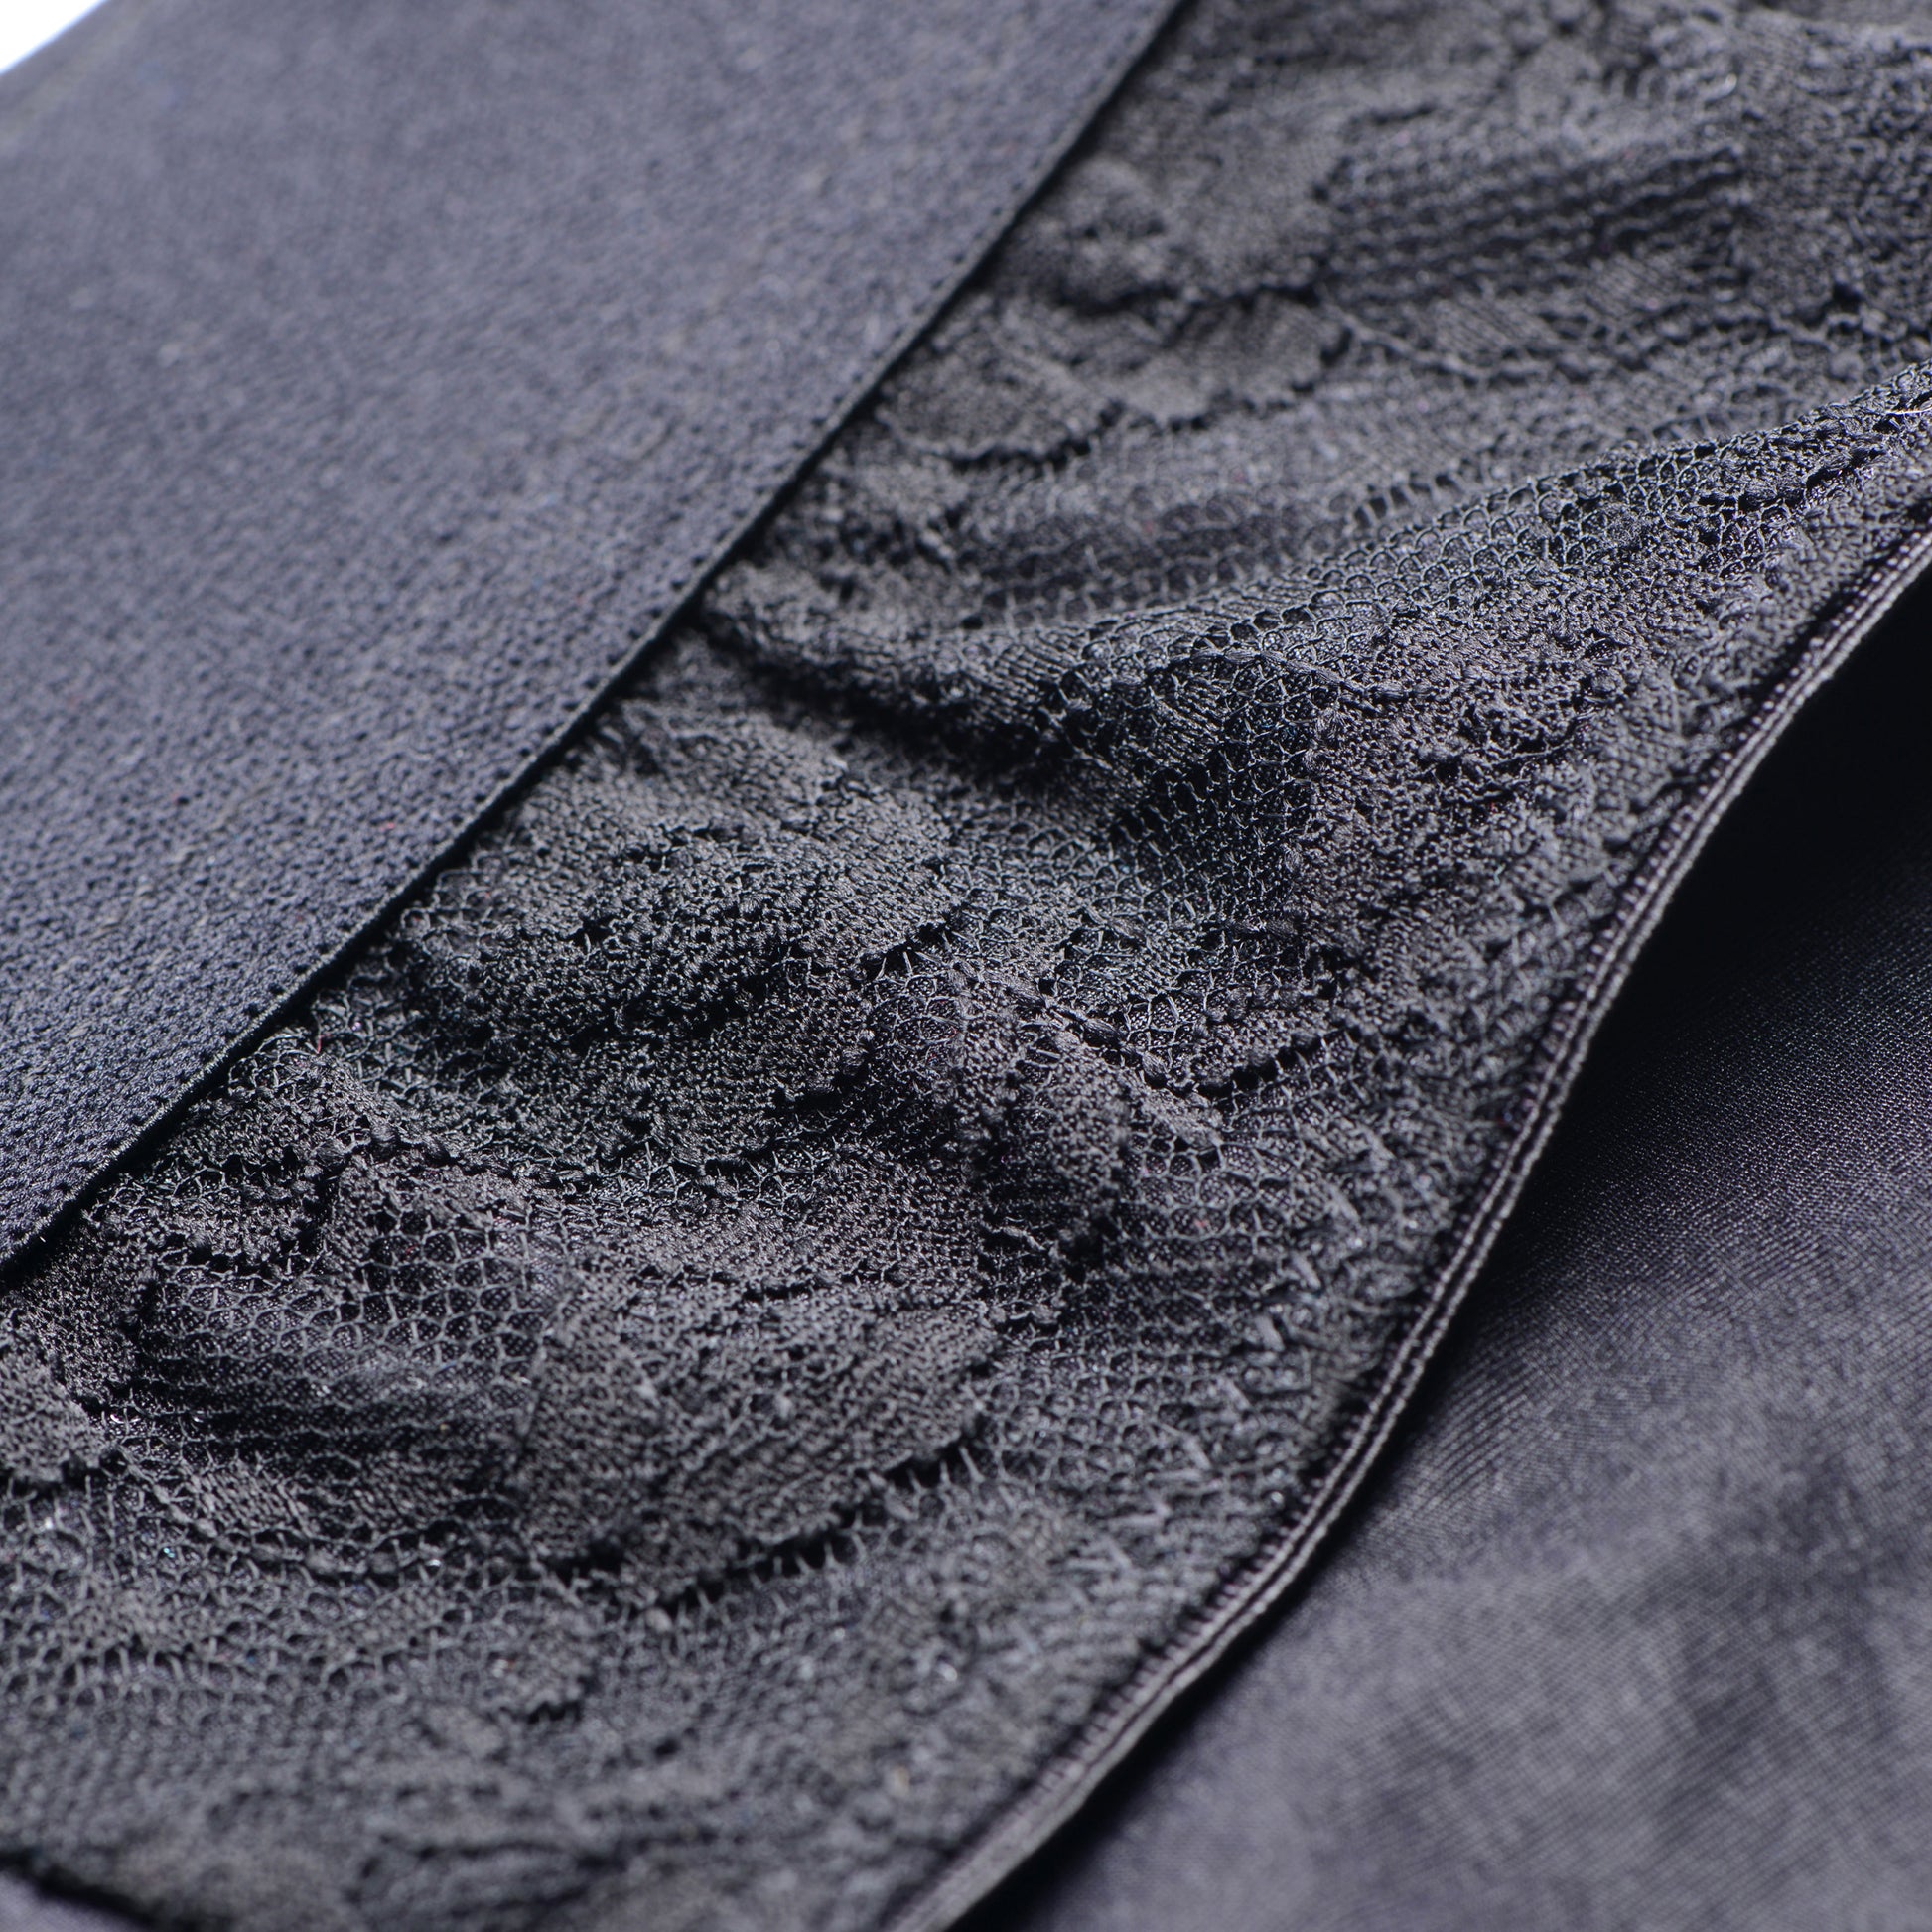 Lace Envy Black Crotchless Panty Harness - L-XL - UABDSM